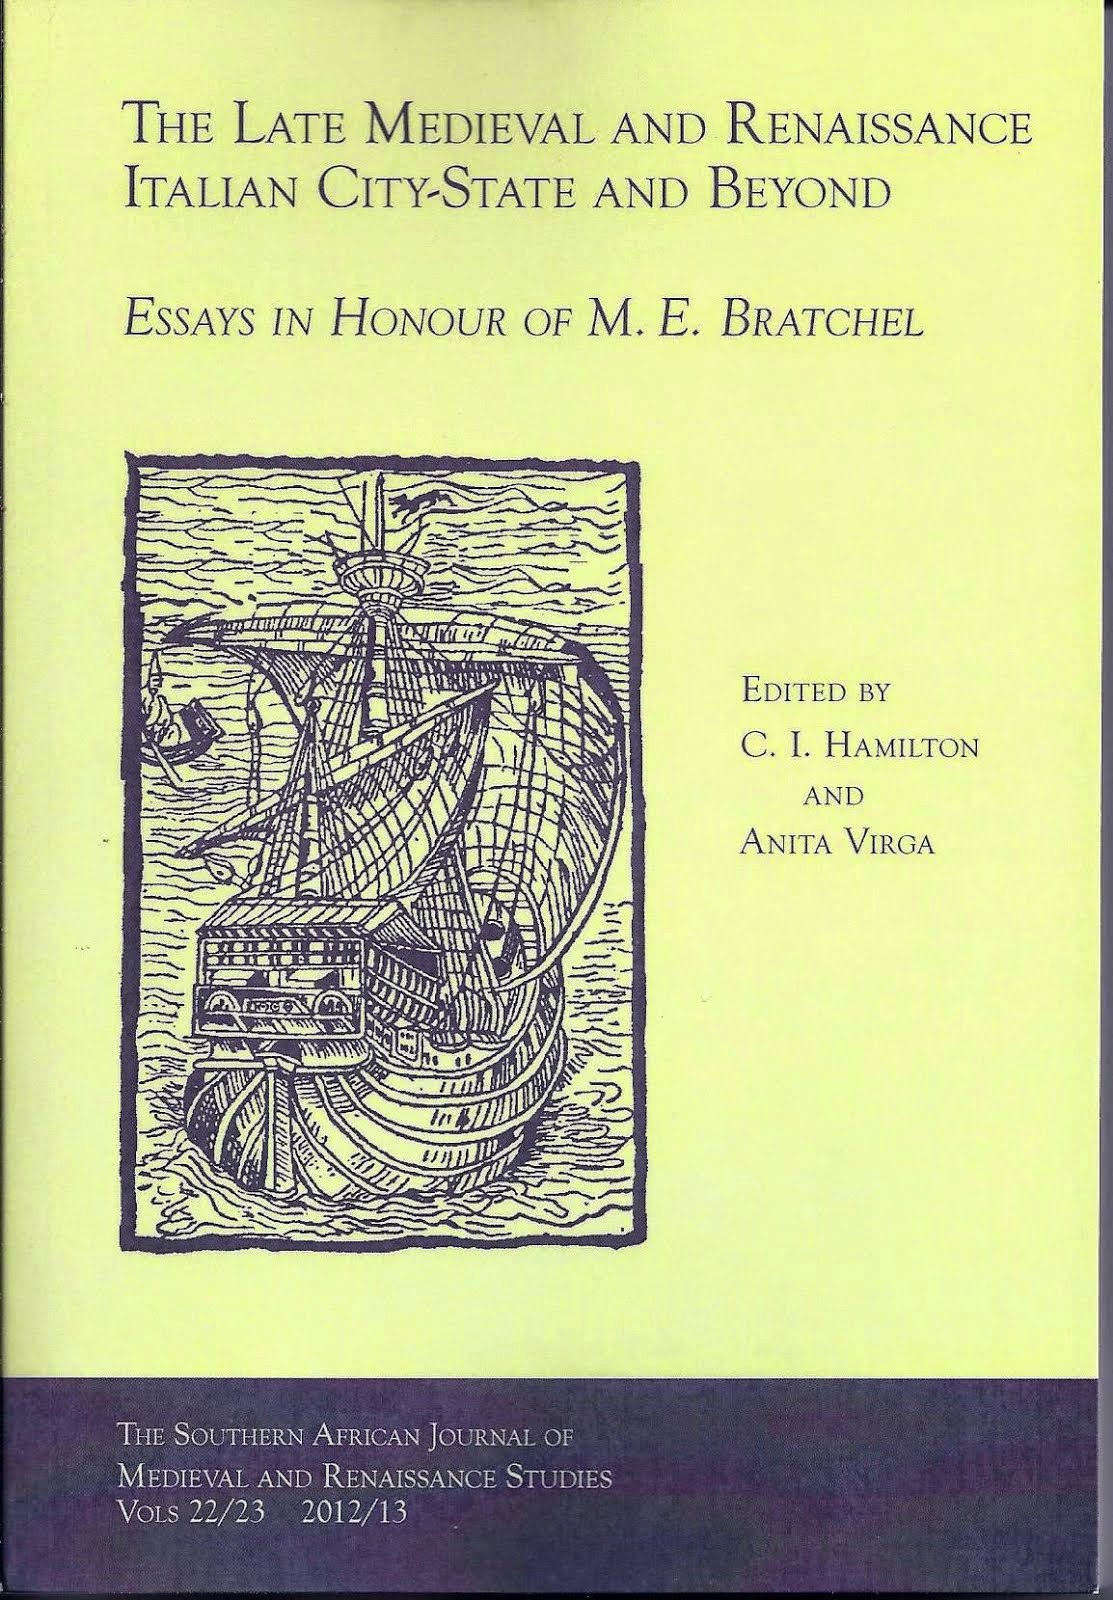 Essays in honour of M.E. Bratchel